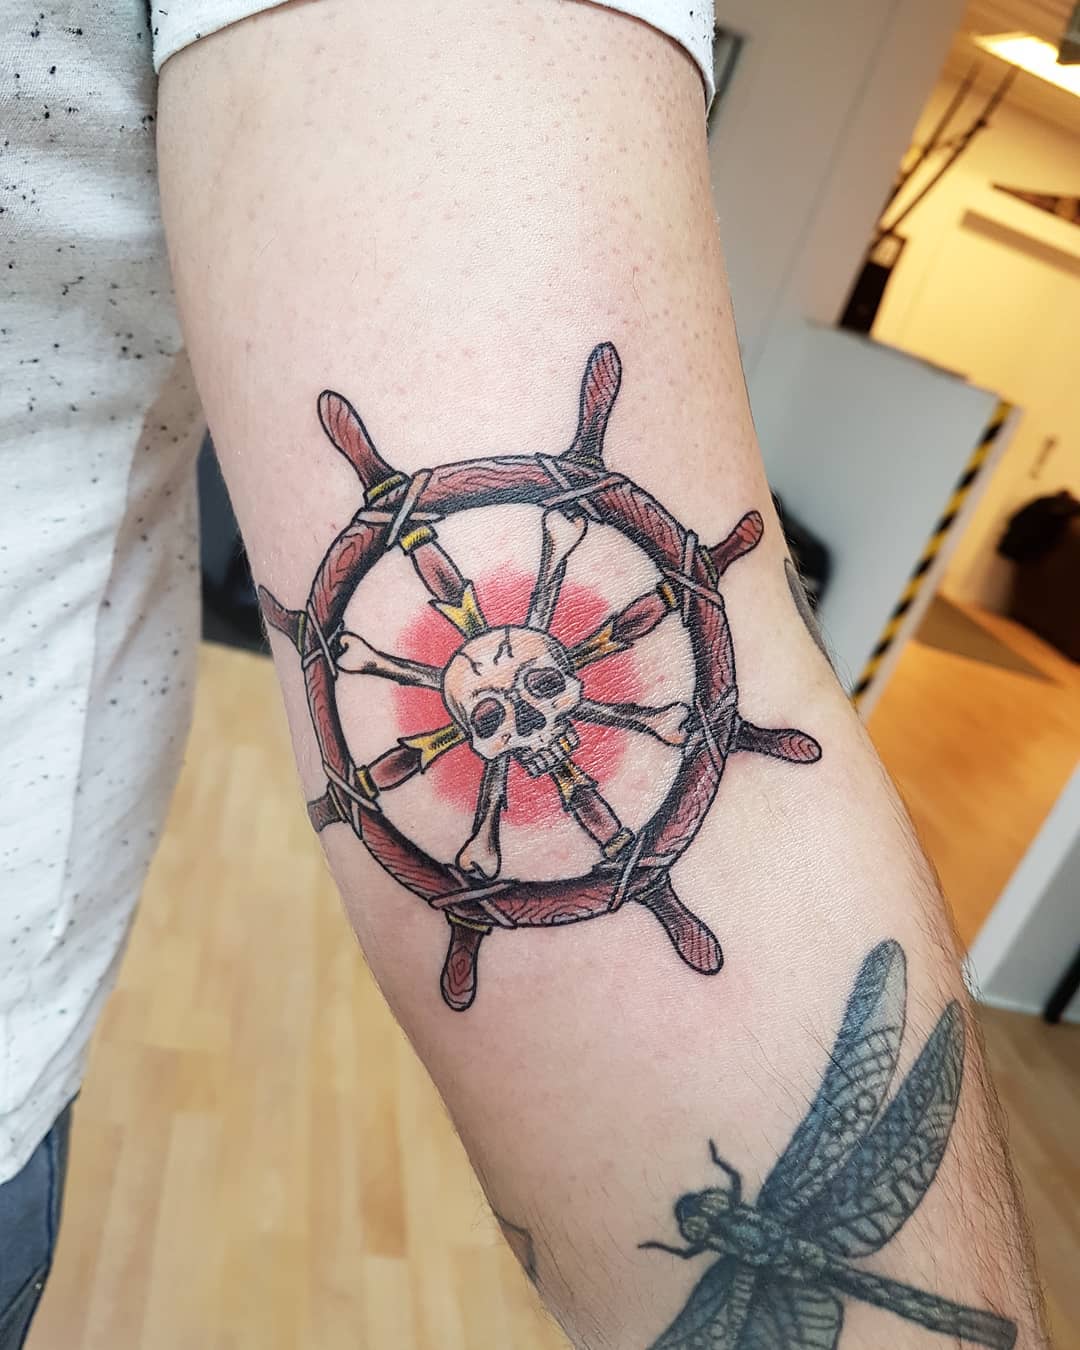 Ship Wheel and Skull Tattoo